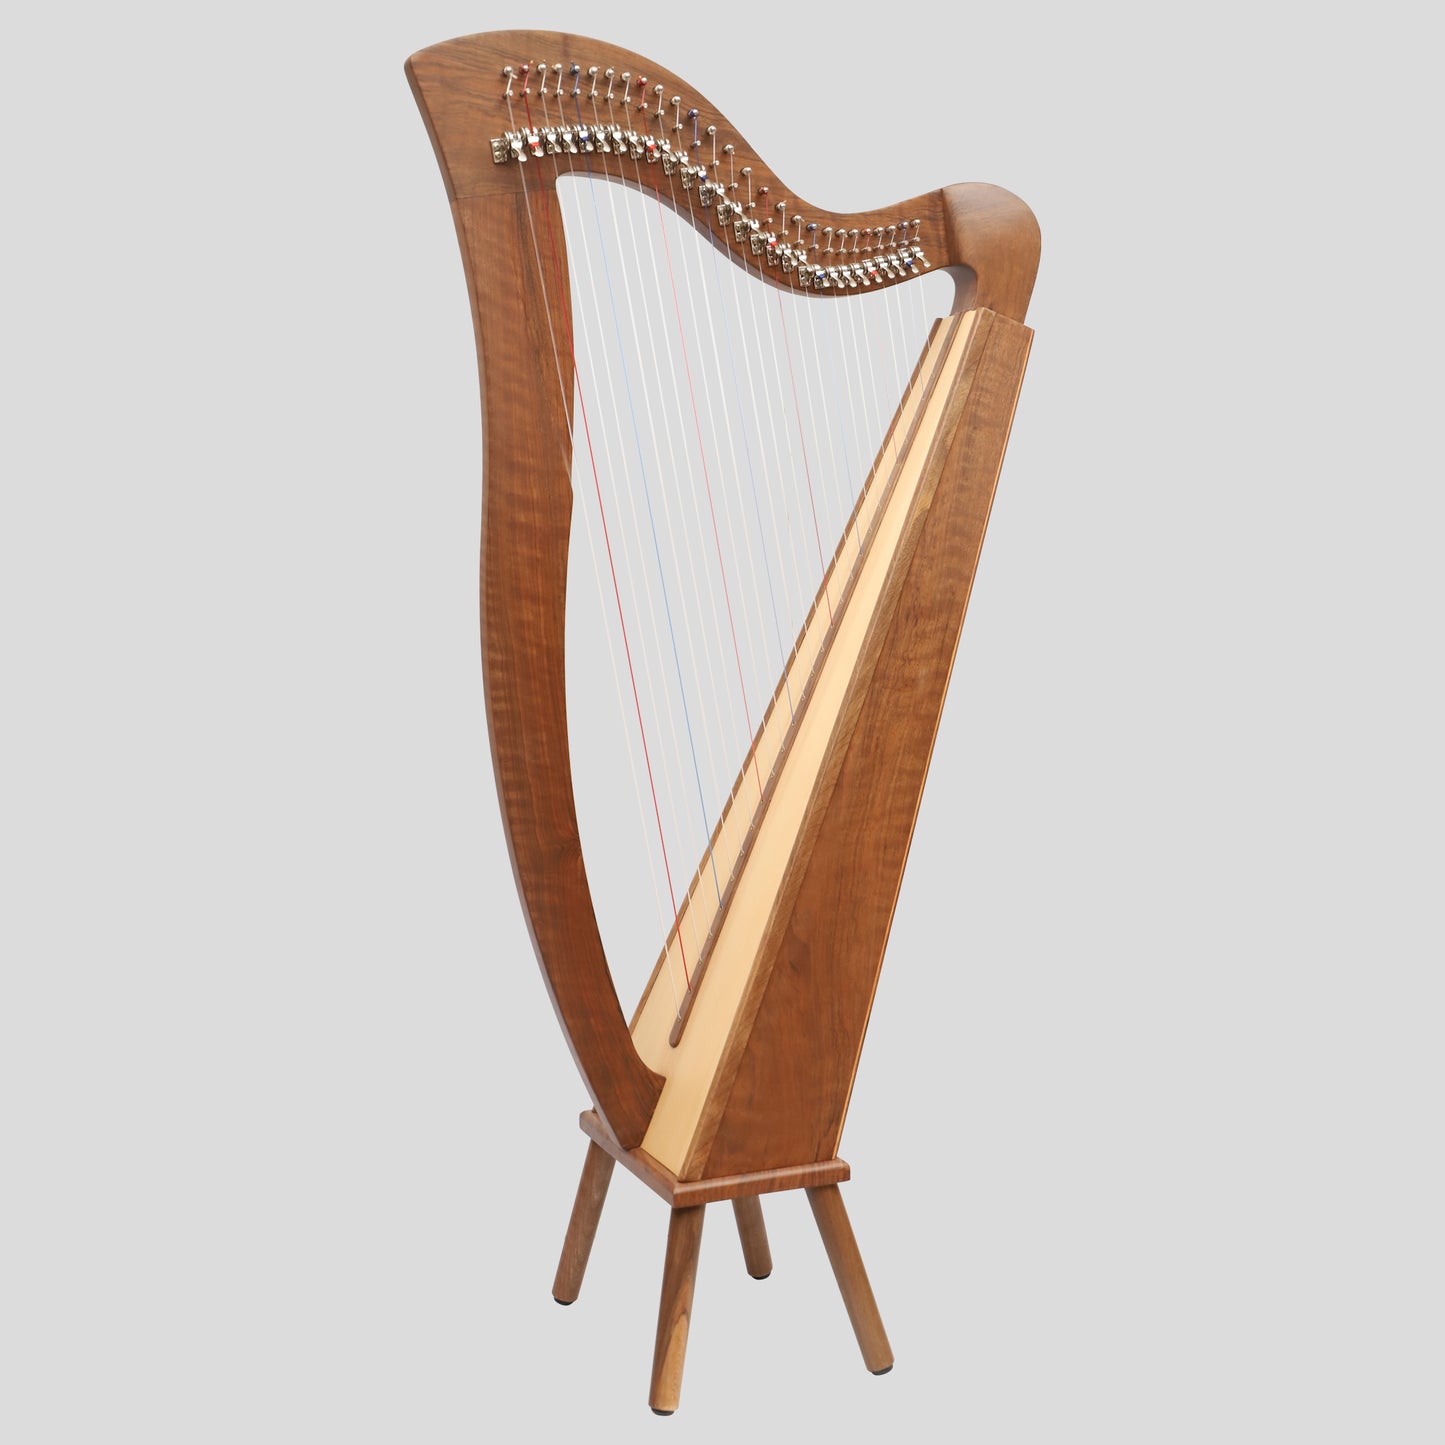 Muzikkon McHugh Harp 27 Strings Walnut Square Back